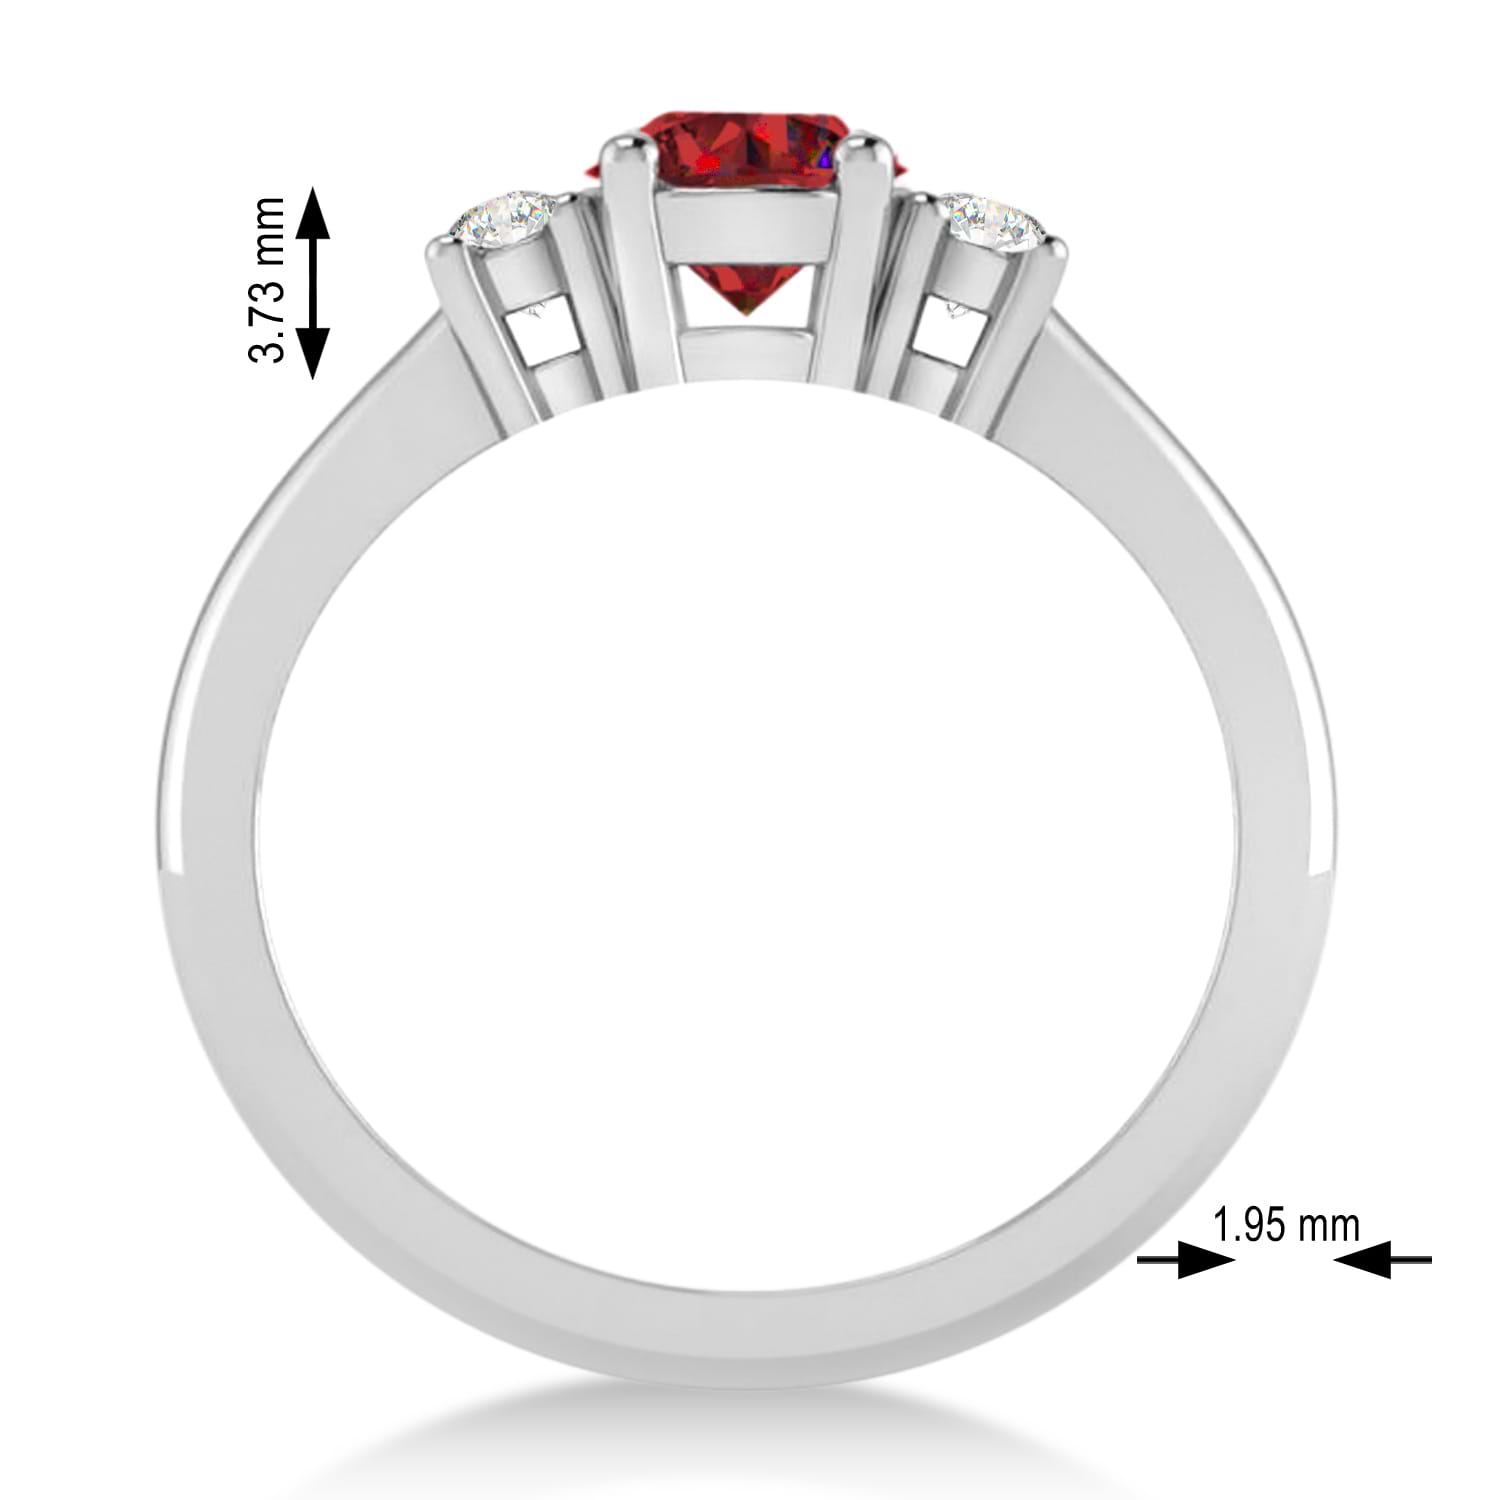 Round Ruby & Diamond Three-Stone Engagement Ring 14k White Gold (0.89ct)